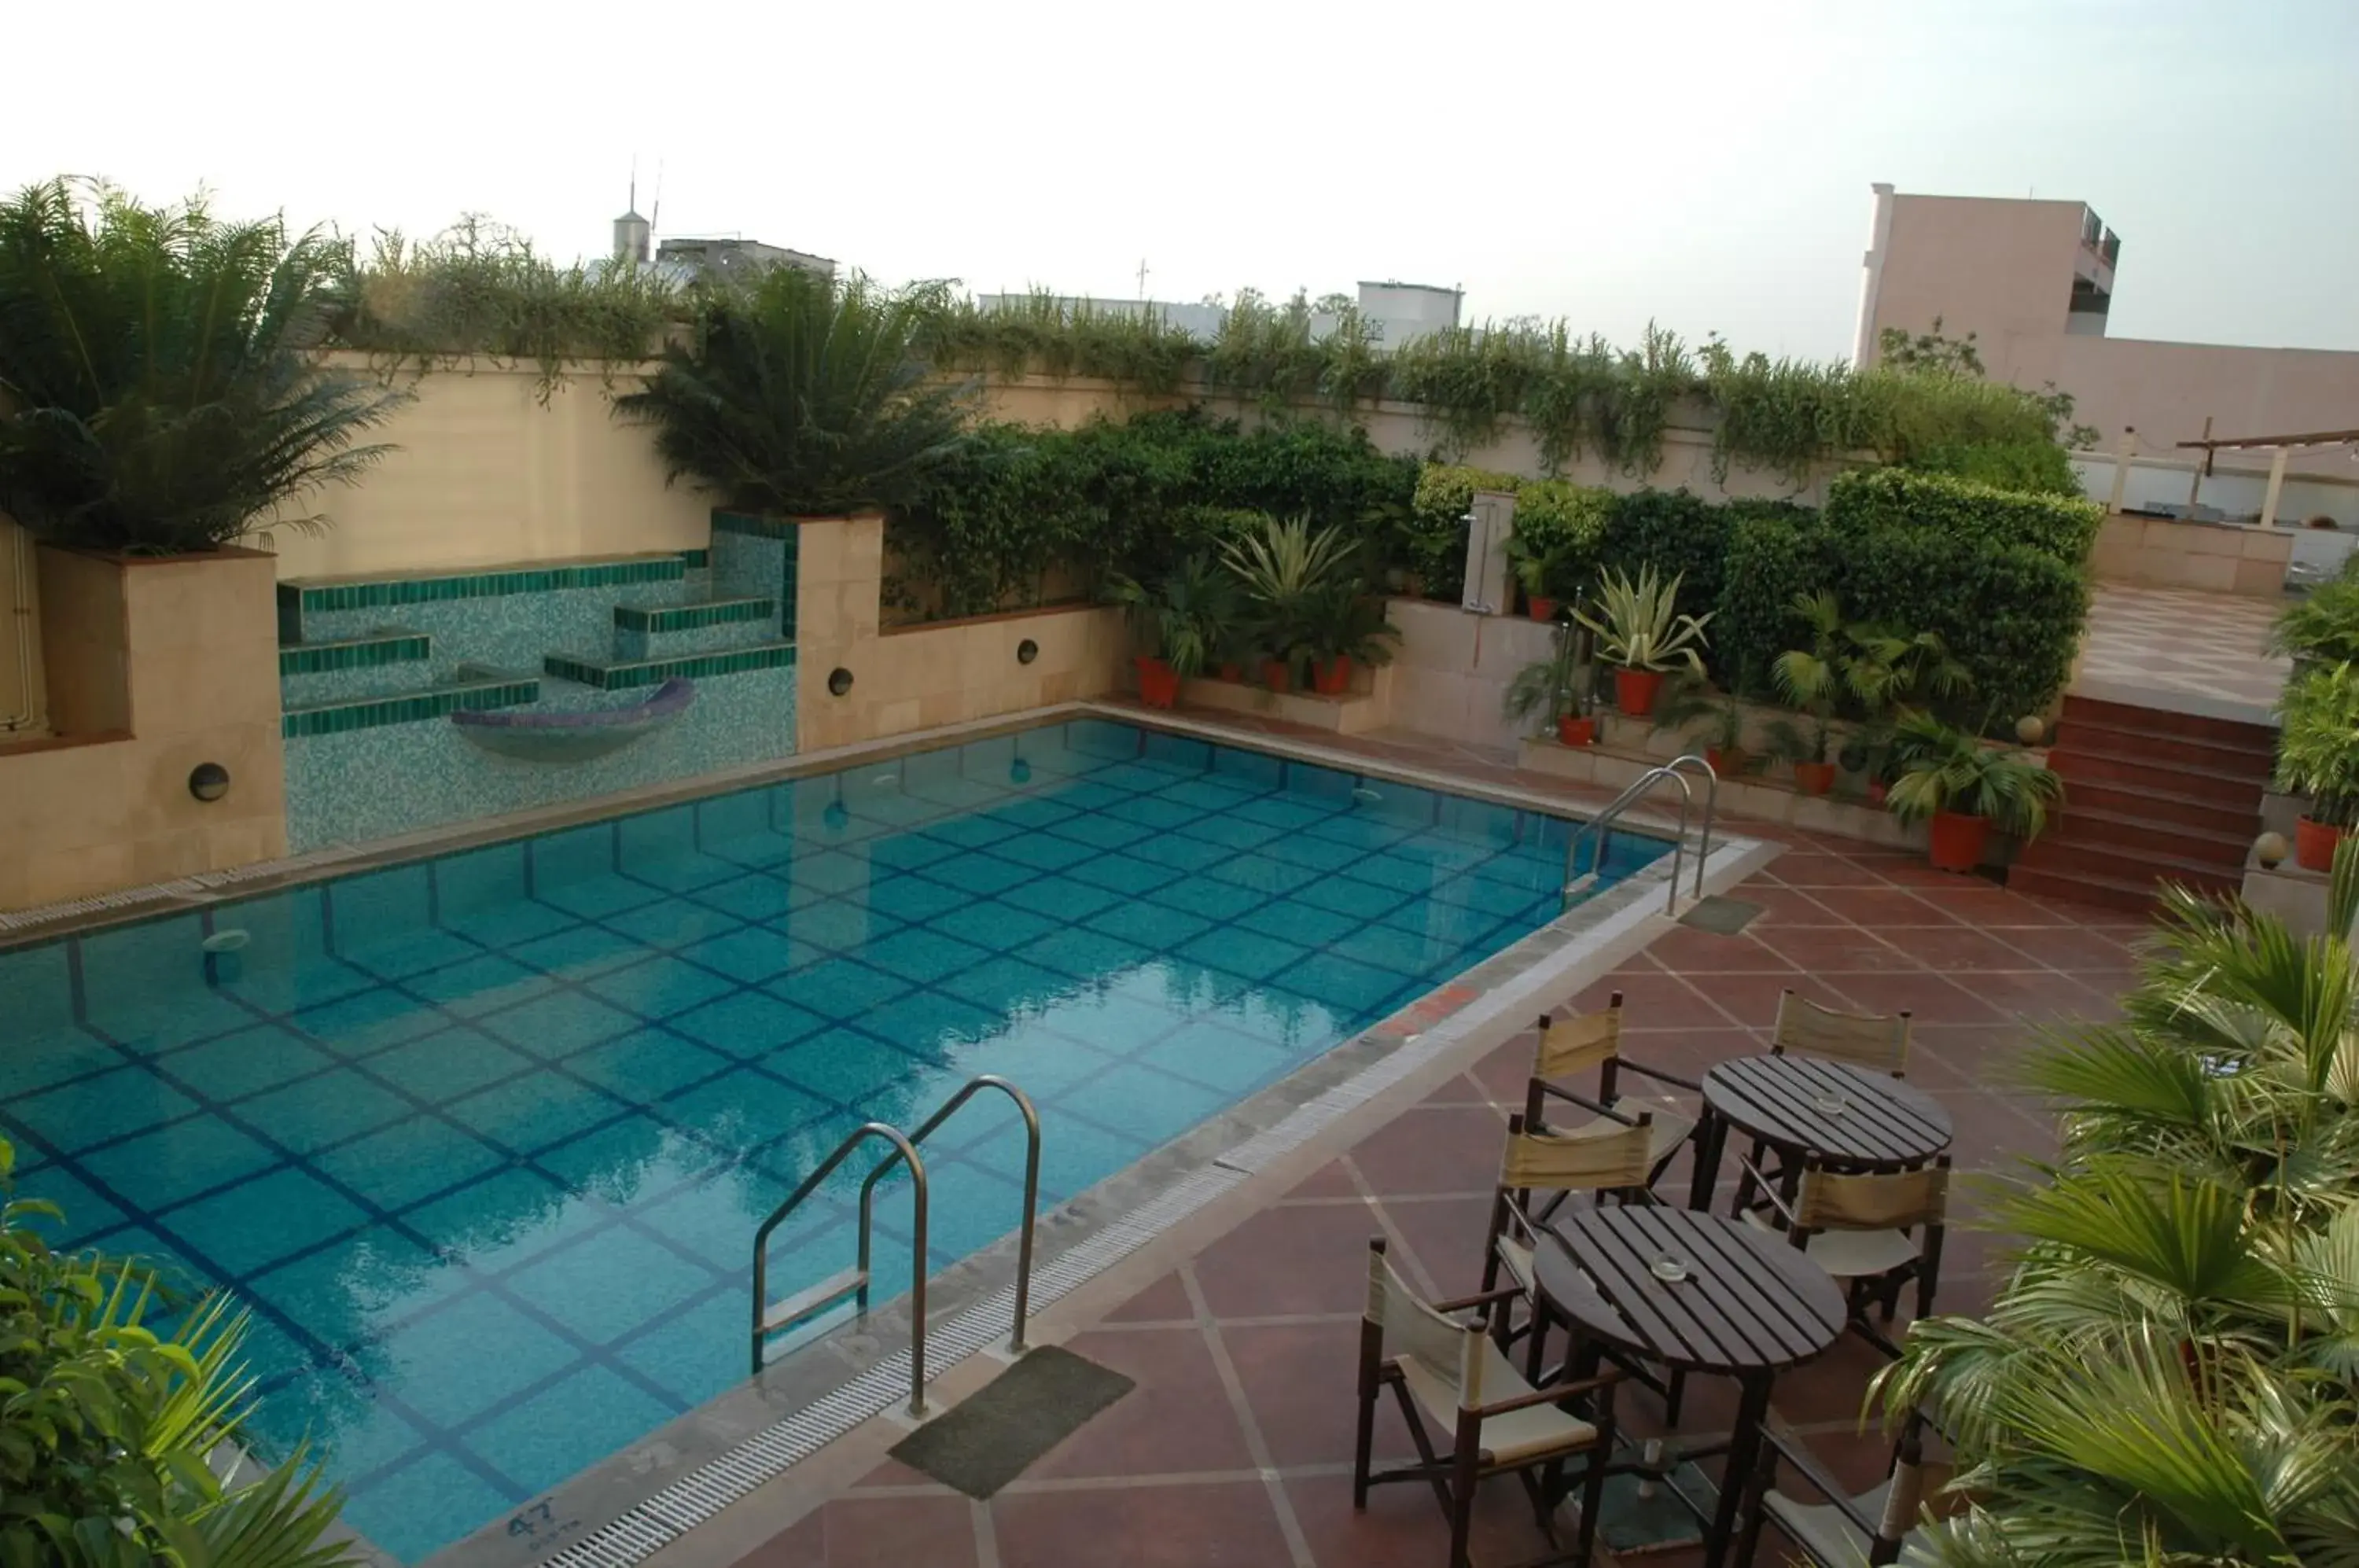 Swimming Pool in Radisson Hotel Varanasi